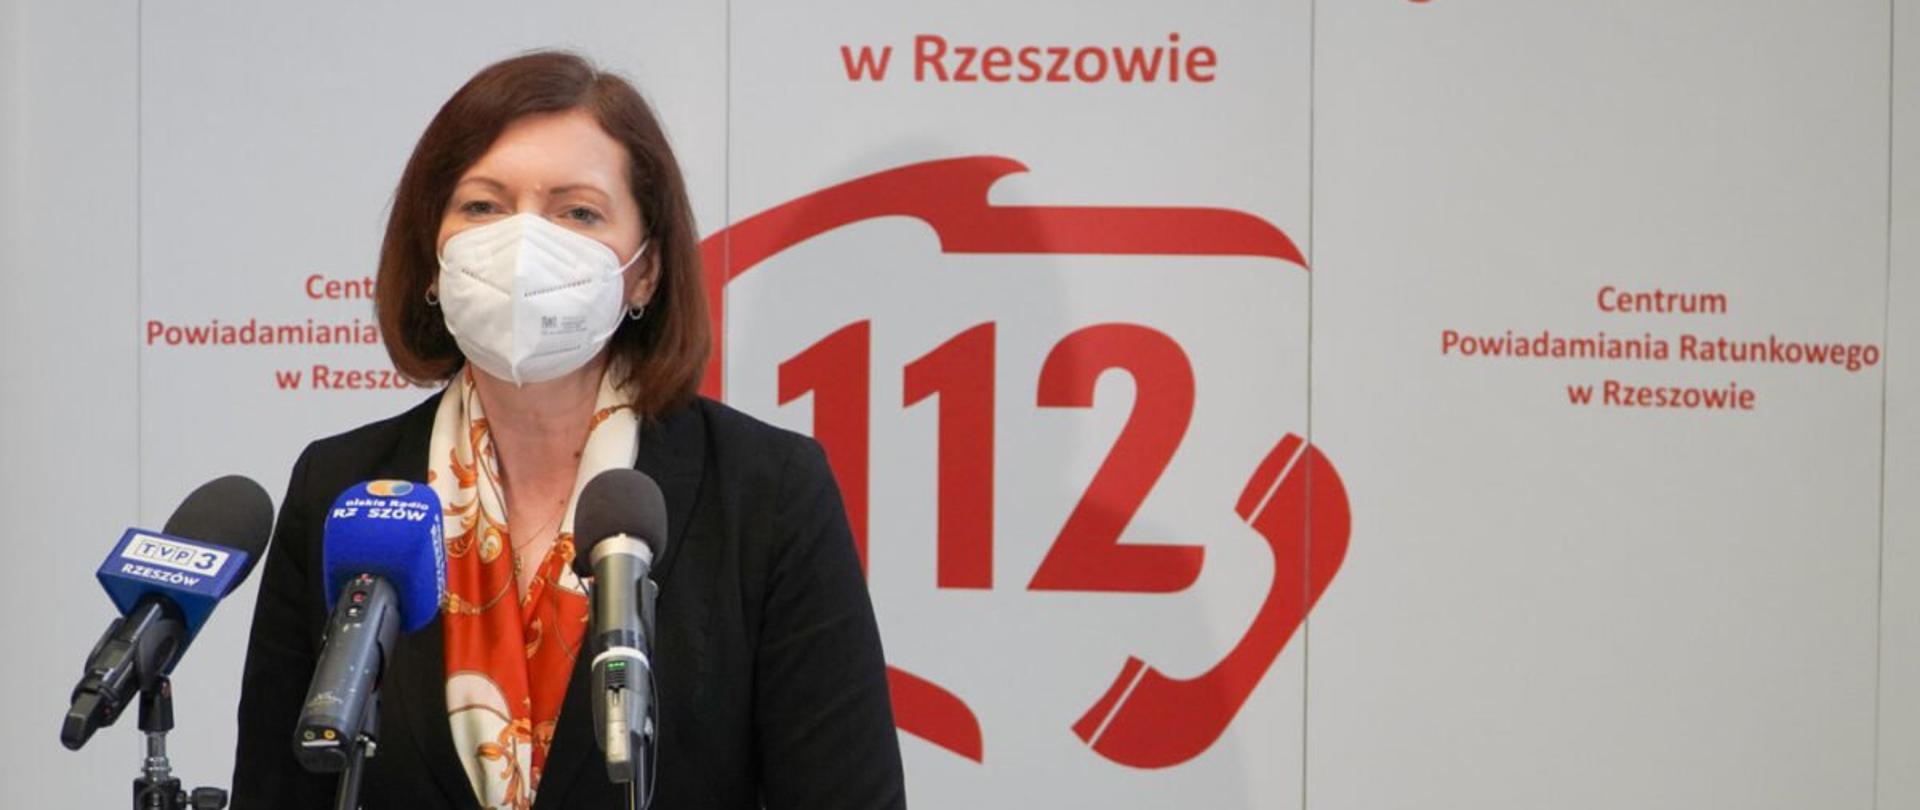 Wojewoda podkarpacki Ewa Leniart zabiera głos podczas konferencji prasowej z okazji Europejskiego Dnia Numeru Alarmowego 112. Stoi na tle banneru z czerwonymi napisami na białym tle: Centrum Powiadamiania Ratunkowego w Rzeszowie.